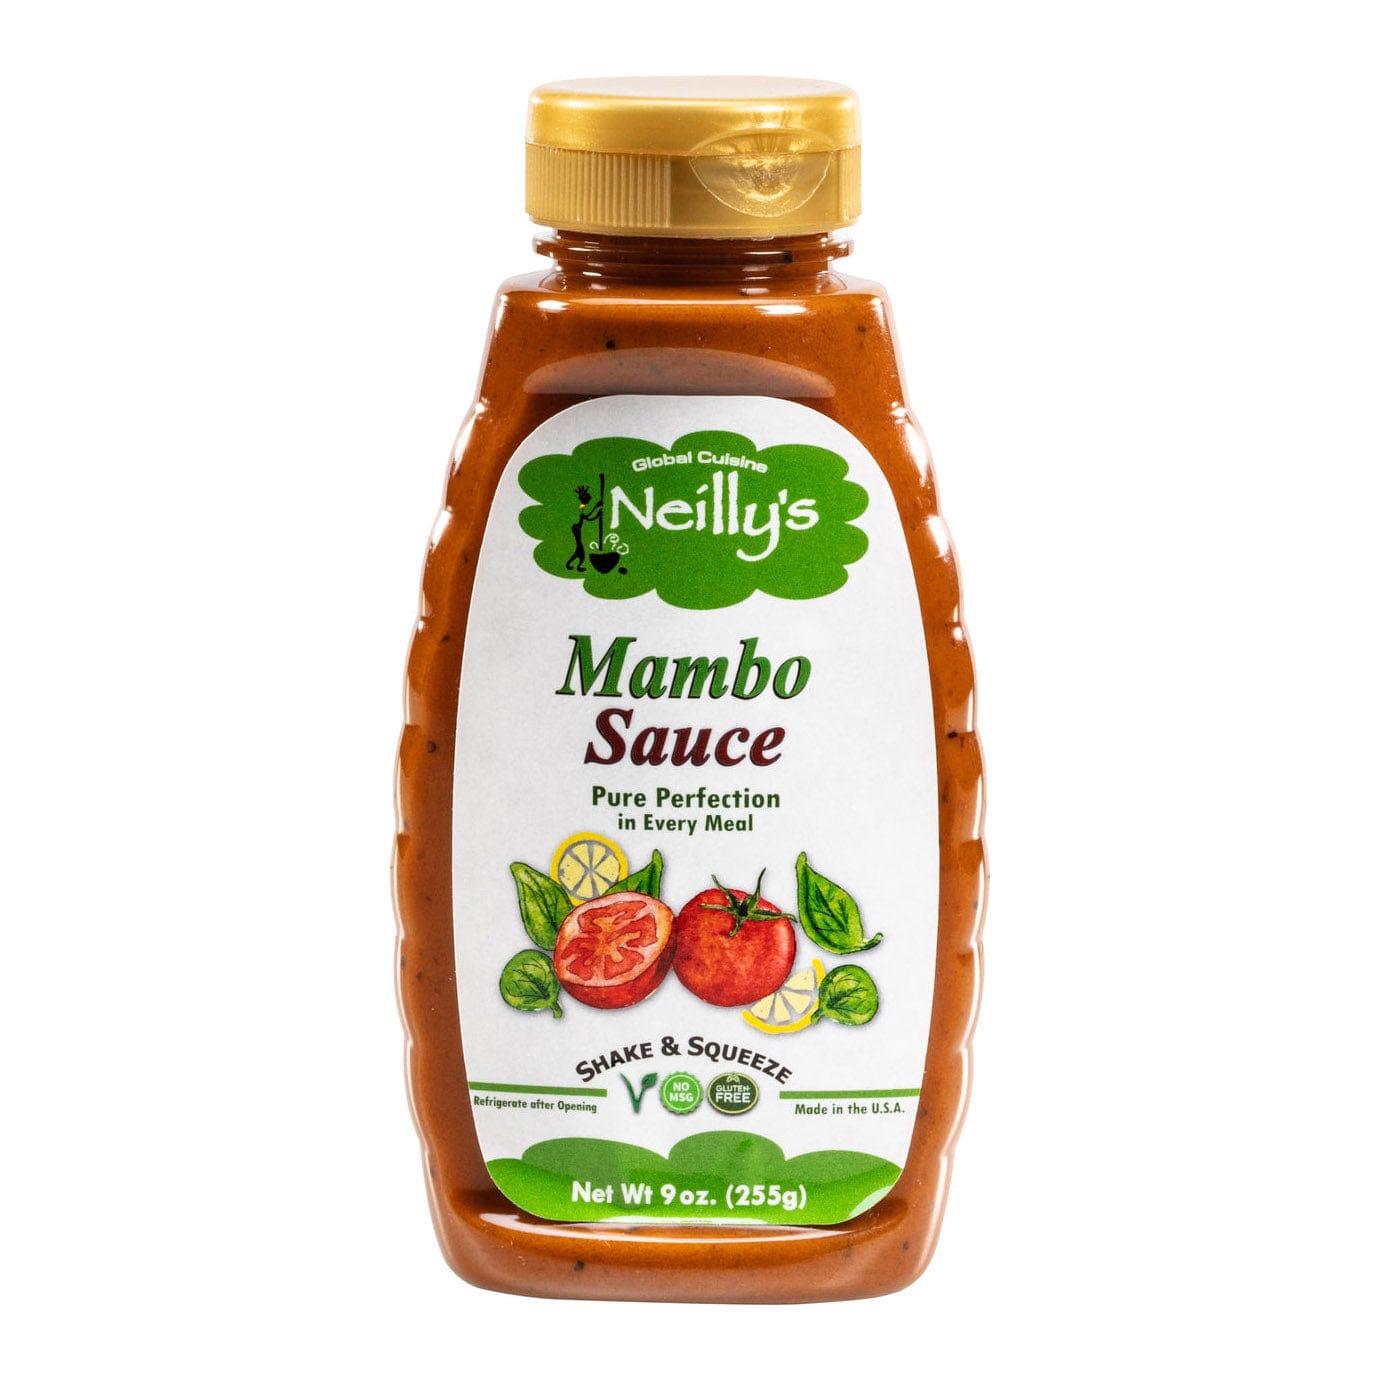 Neilly's Mambo Sauce